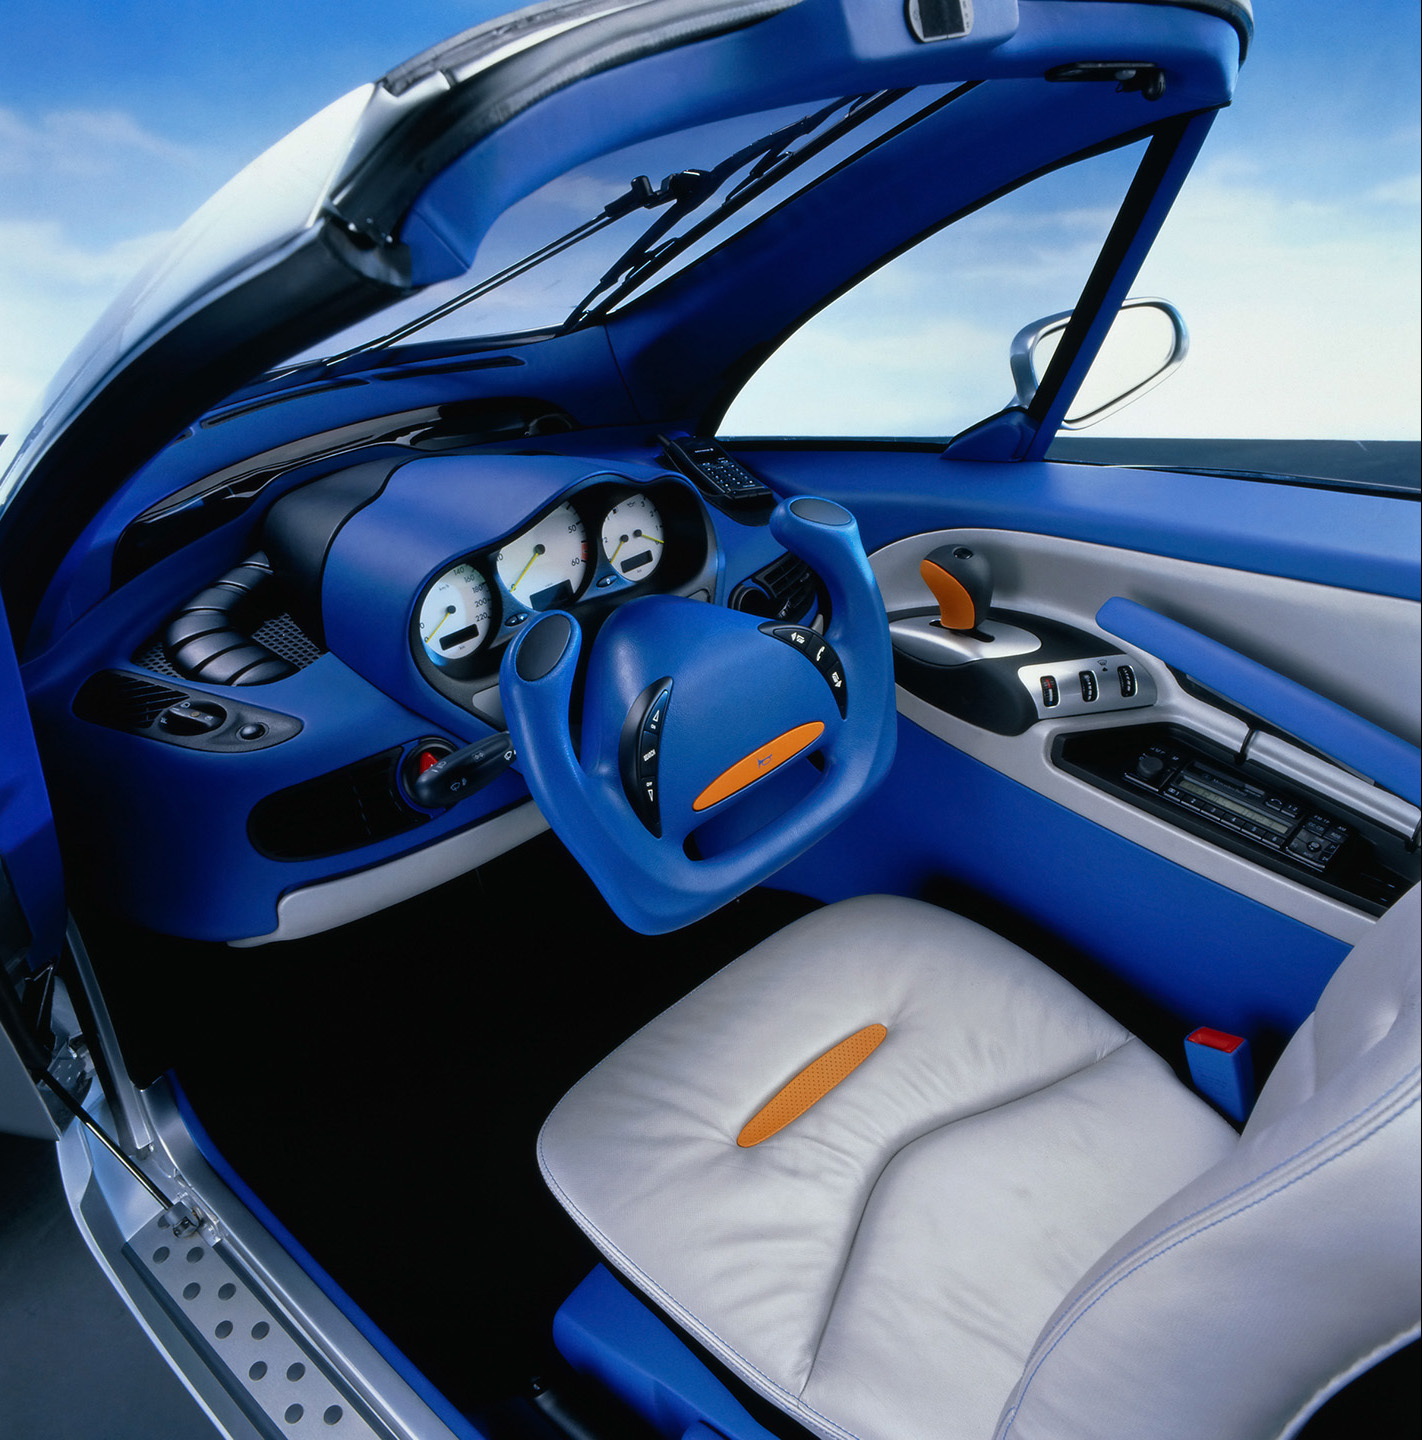 Mercedes-Benz F 300 Concept